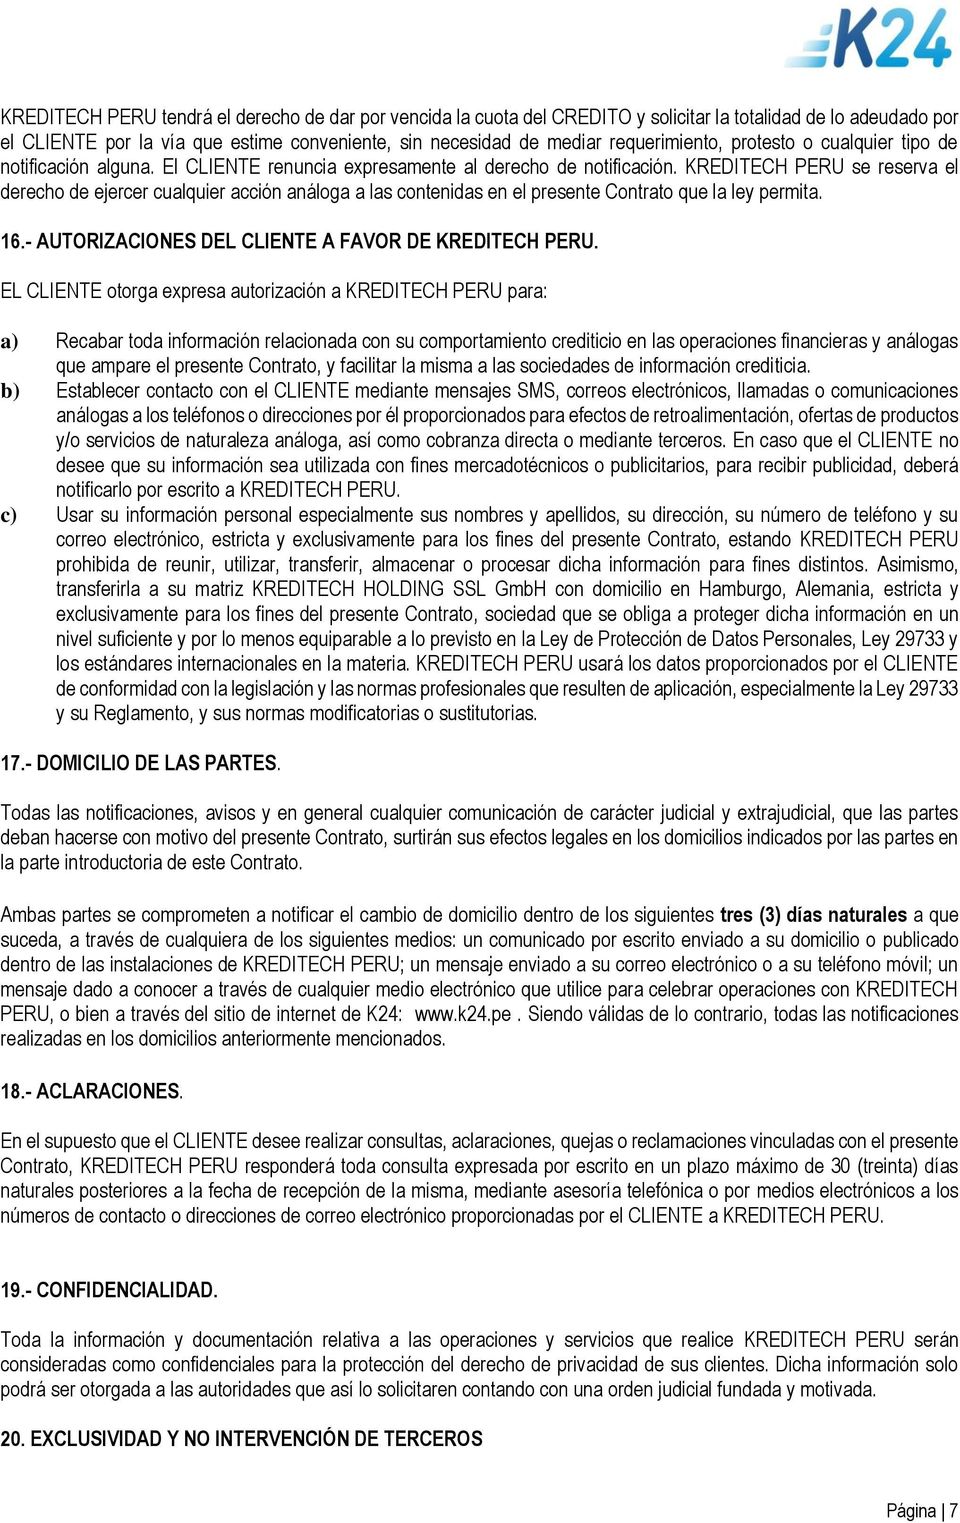 KREDITECH PERU se reserva el derecho de ejercer cualquier acción análoga a las contenidas en el presente Contrato que la ley permita. 16.- AUTORIZACIONES DEL CLIENTE A FAVOR DE KREDITECH PERU.